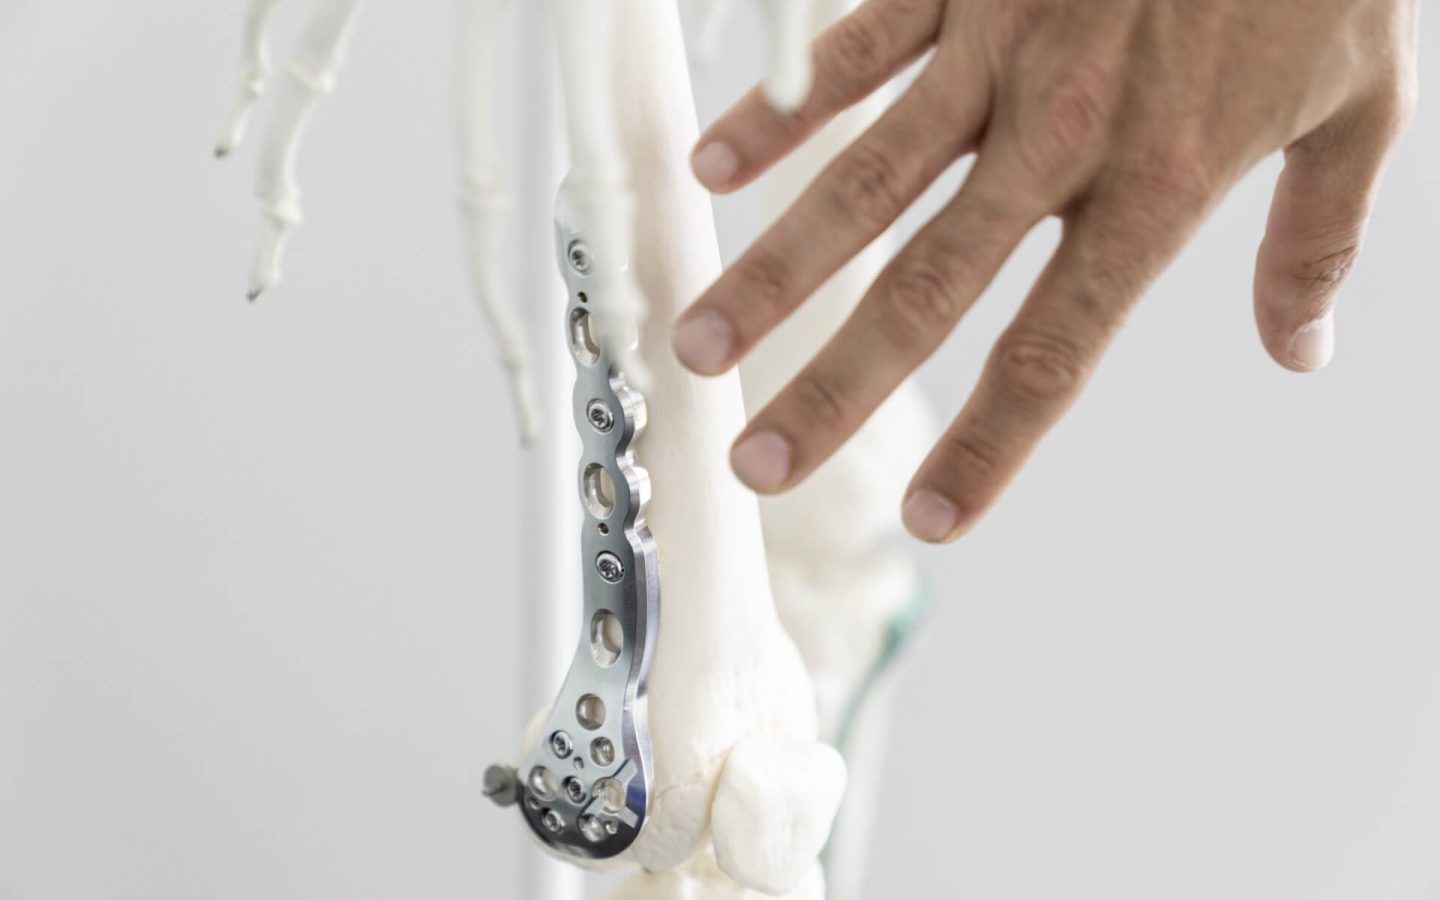 Wachsende Nachfrage nach künstlichen Hüft- und Kniegelenken: SMB Medical profitiert vom Boom des Prothesenmarkts.